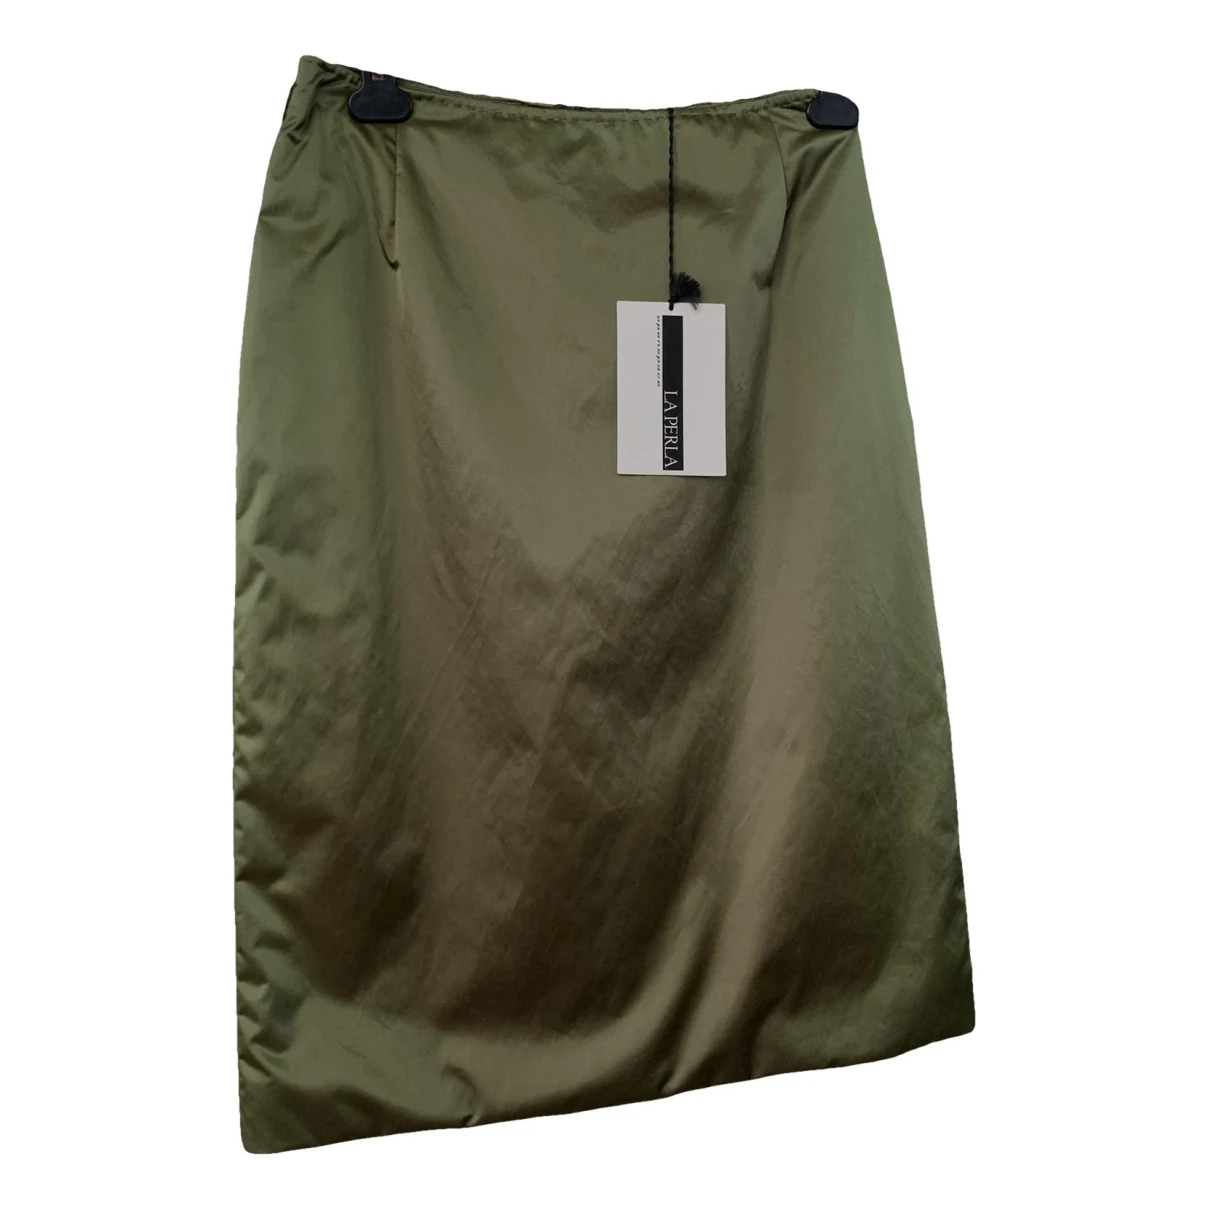 Pre-owned La Perla Mid-length Skirt In Green